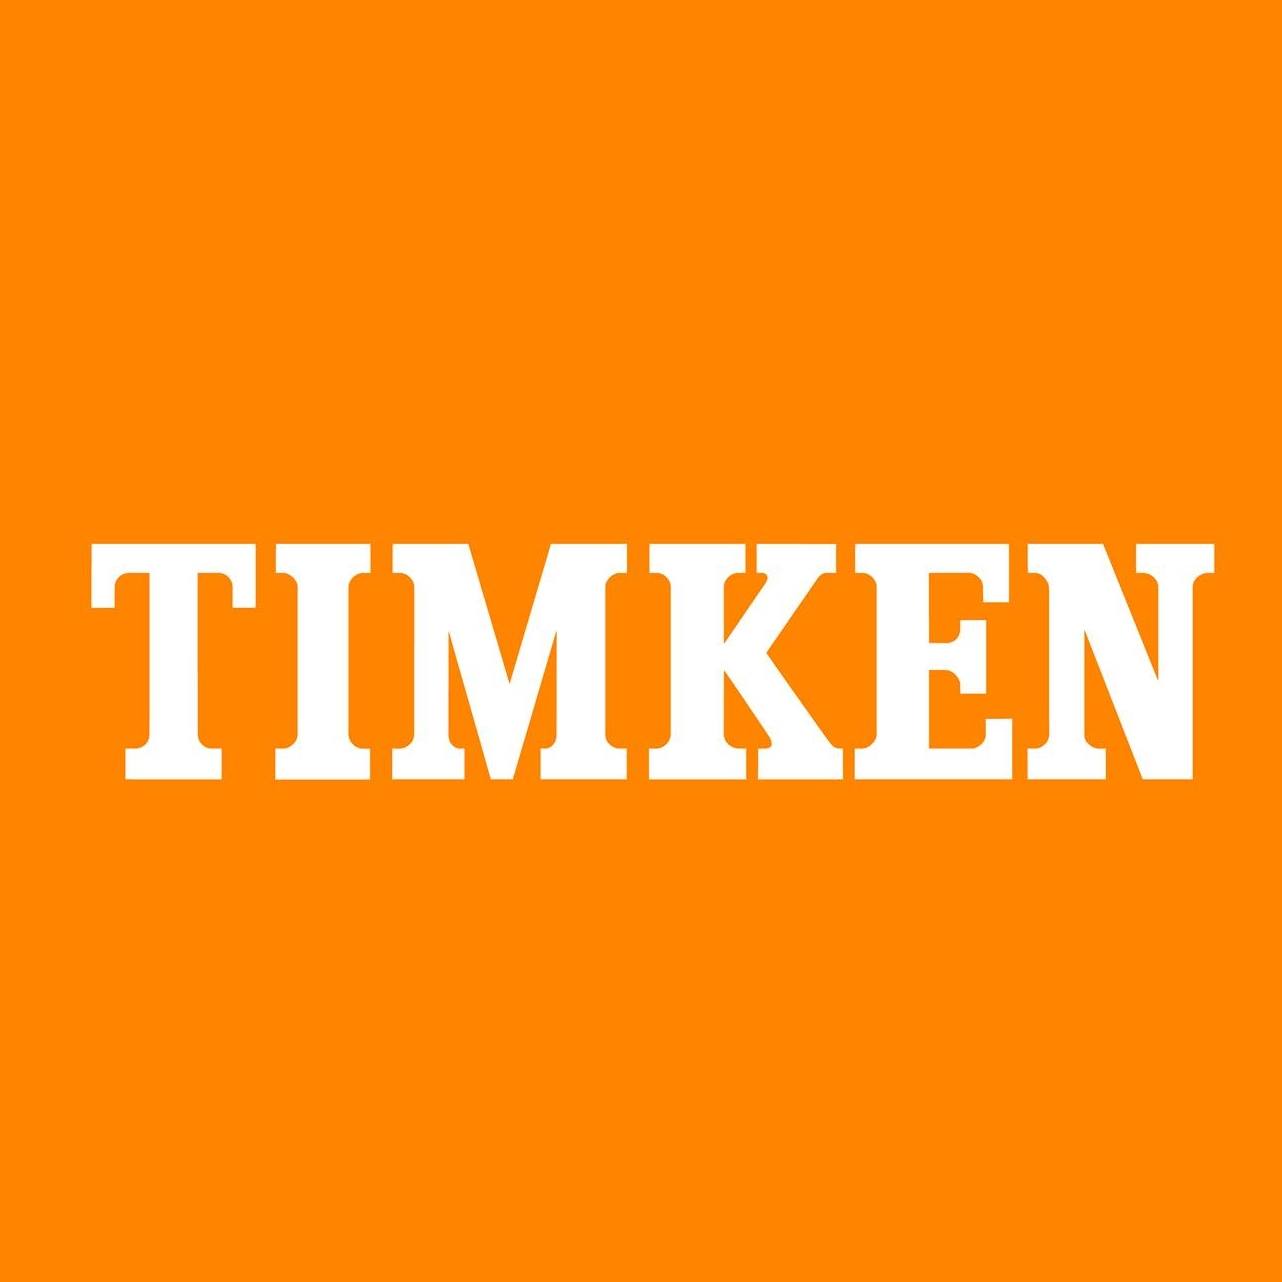 Timken logo.